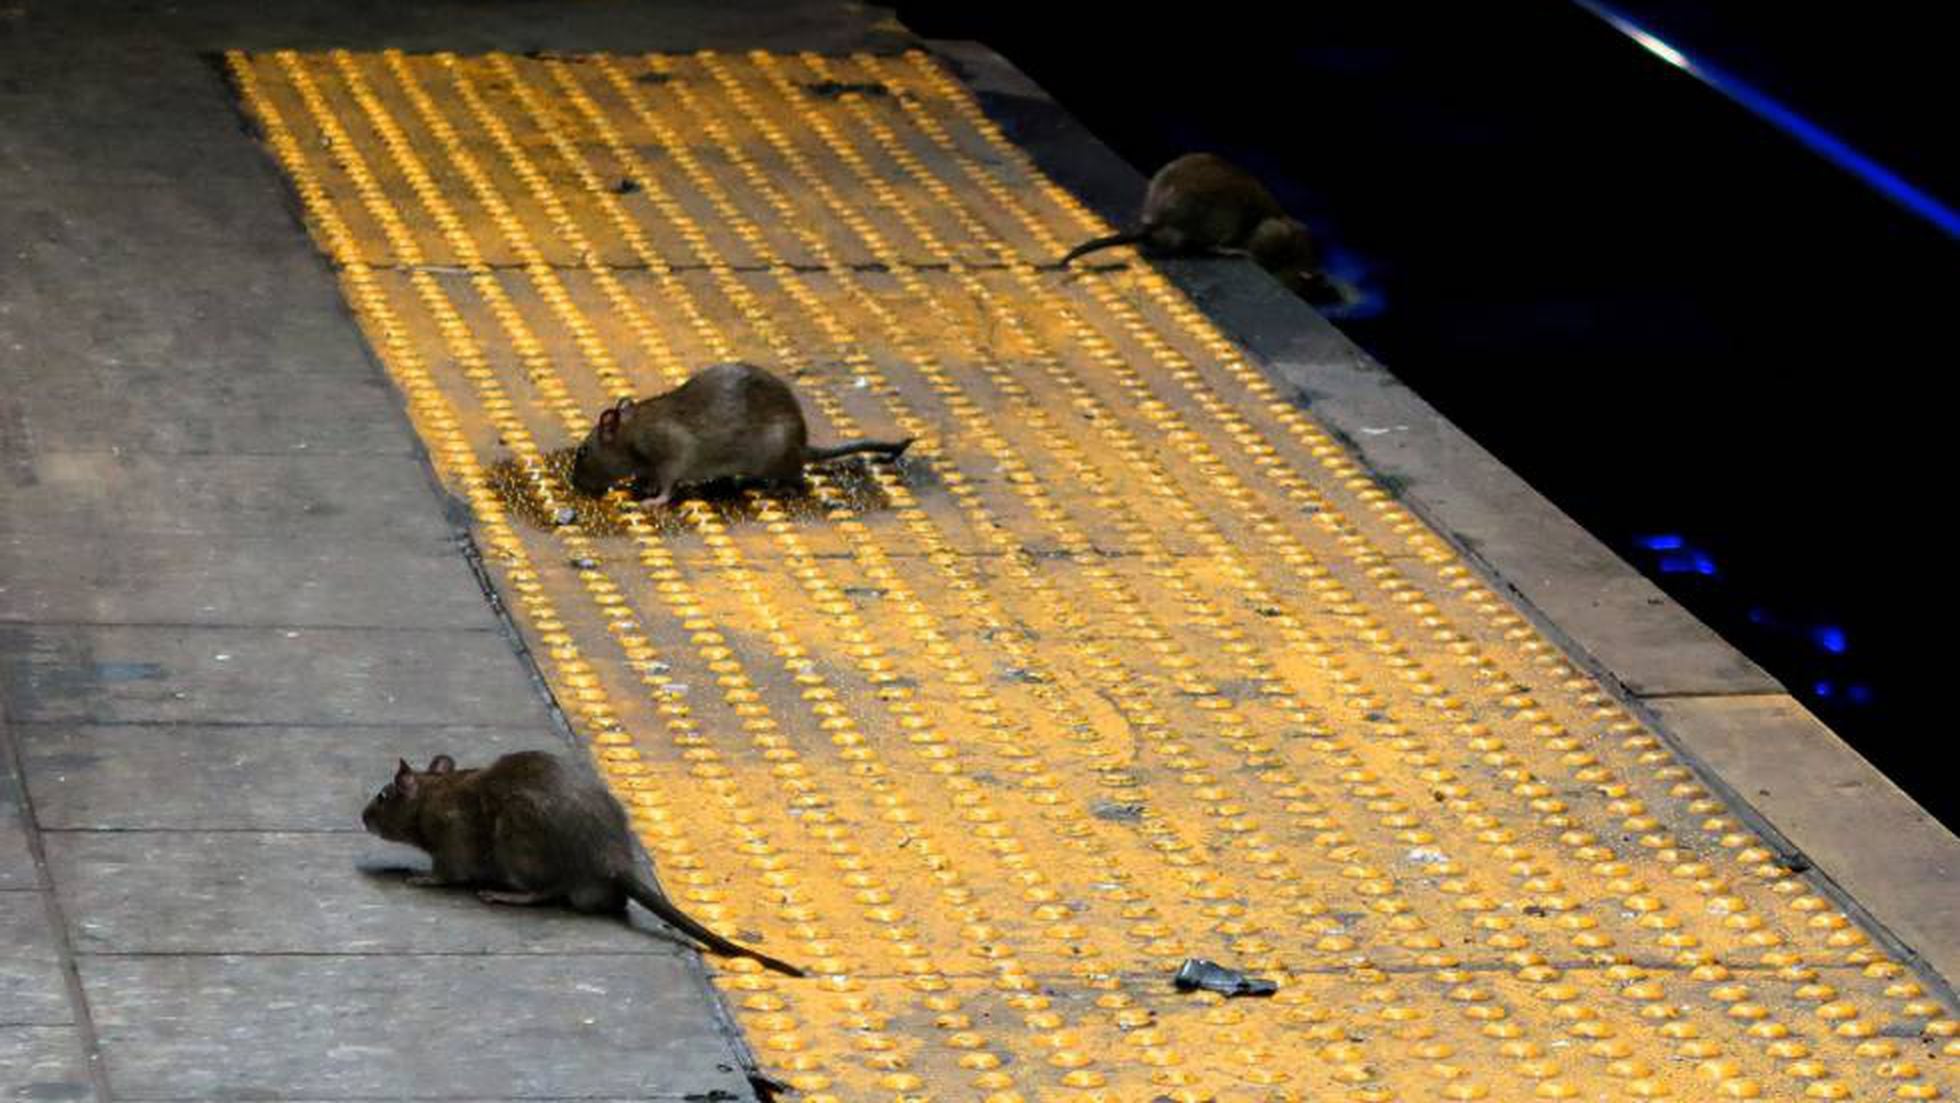 Comendo com ratos': Nova York está sofrendo com invasão de roedores